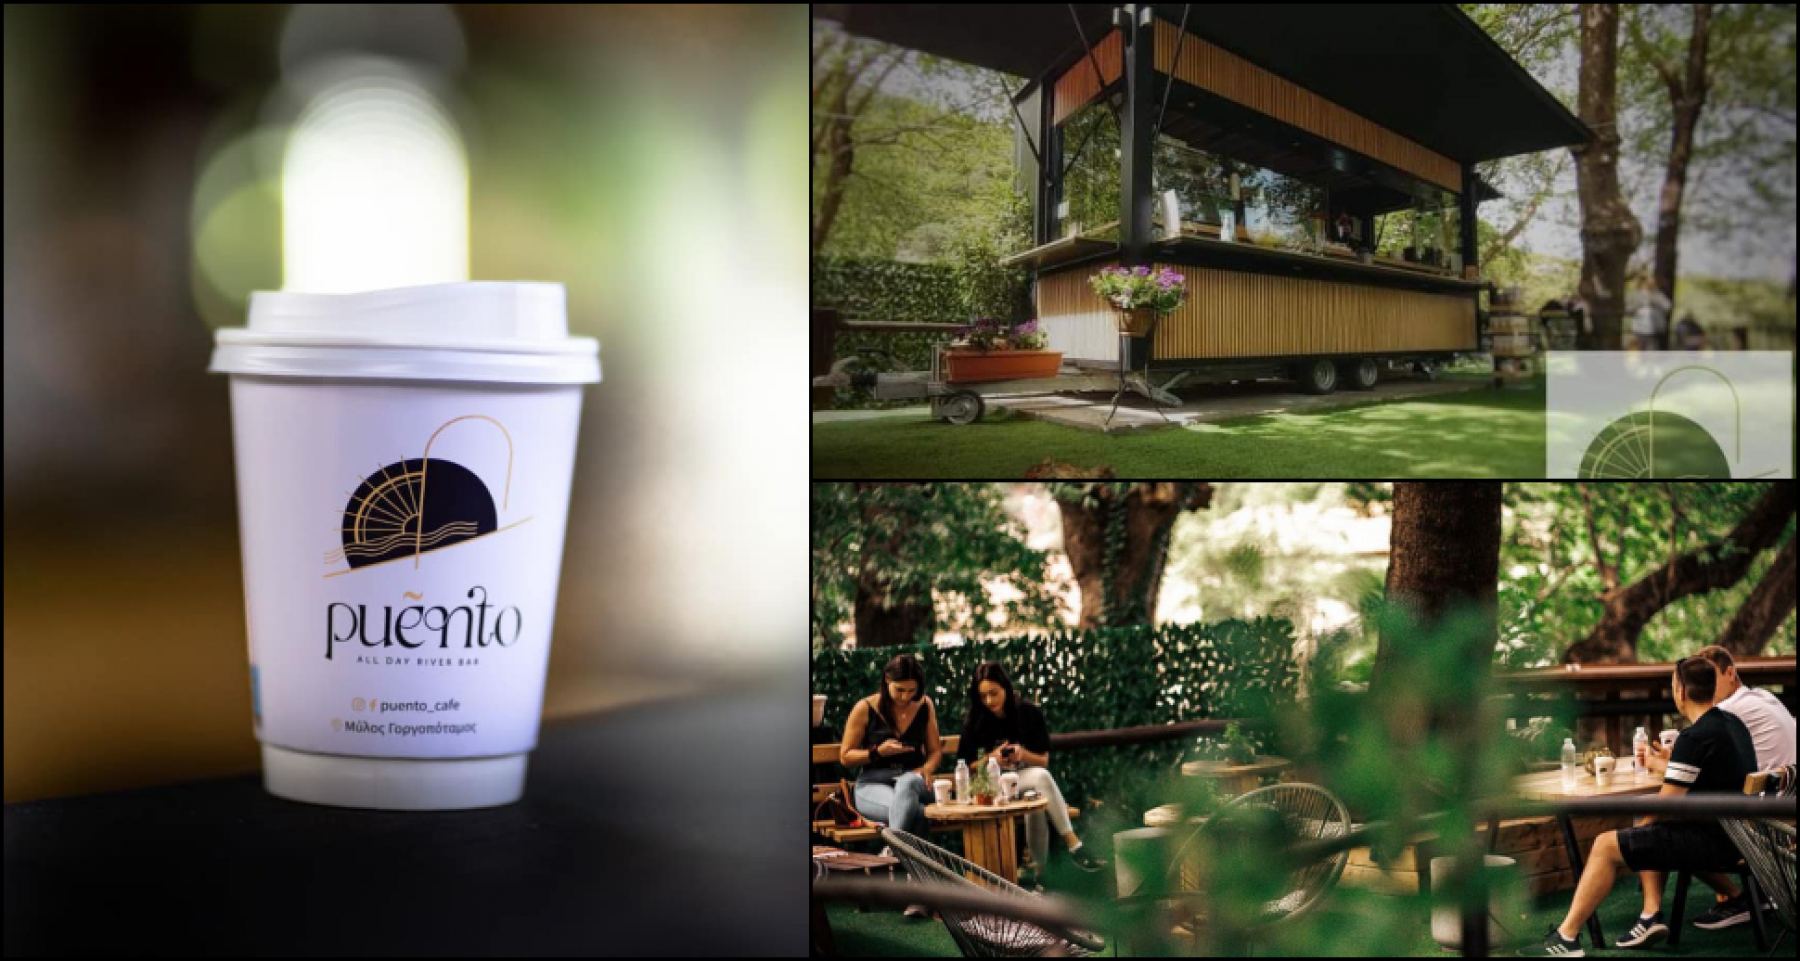 Γοργοπόταμος: Το αγαπημένο «Puento Cafe» σας περιμένει και για Φθινοπωρινές απολαύσεις στη φύση!